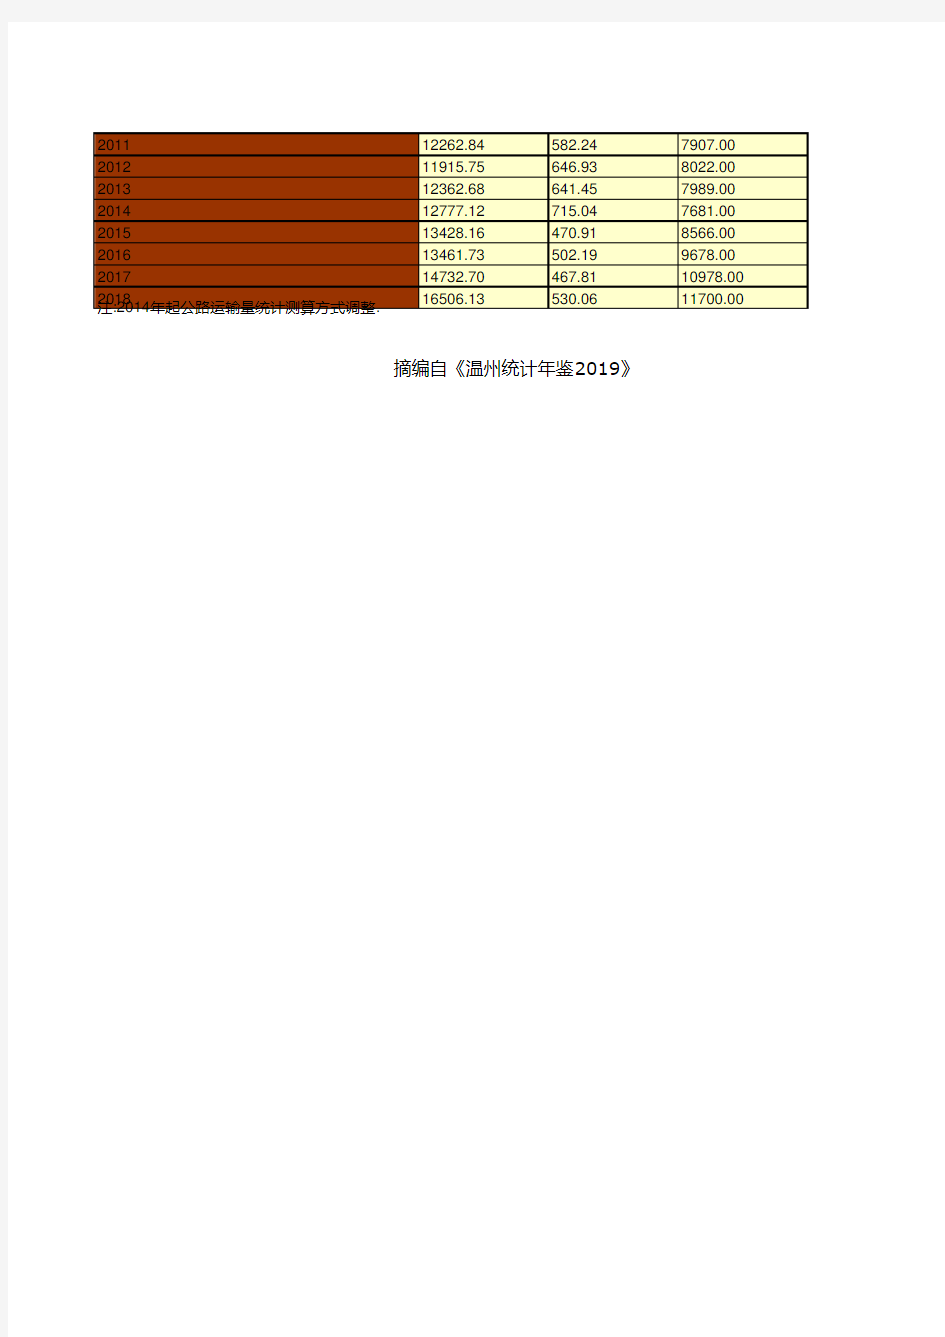 温州市社会经济发展统计年鉴指标数据：主要年份货运量统计(1949-2018)